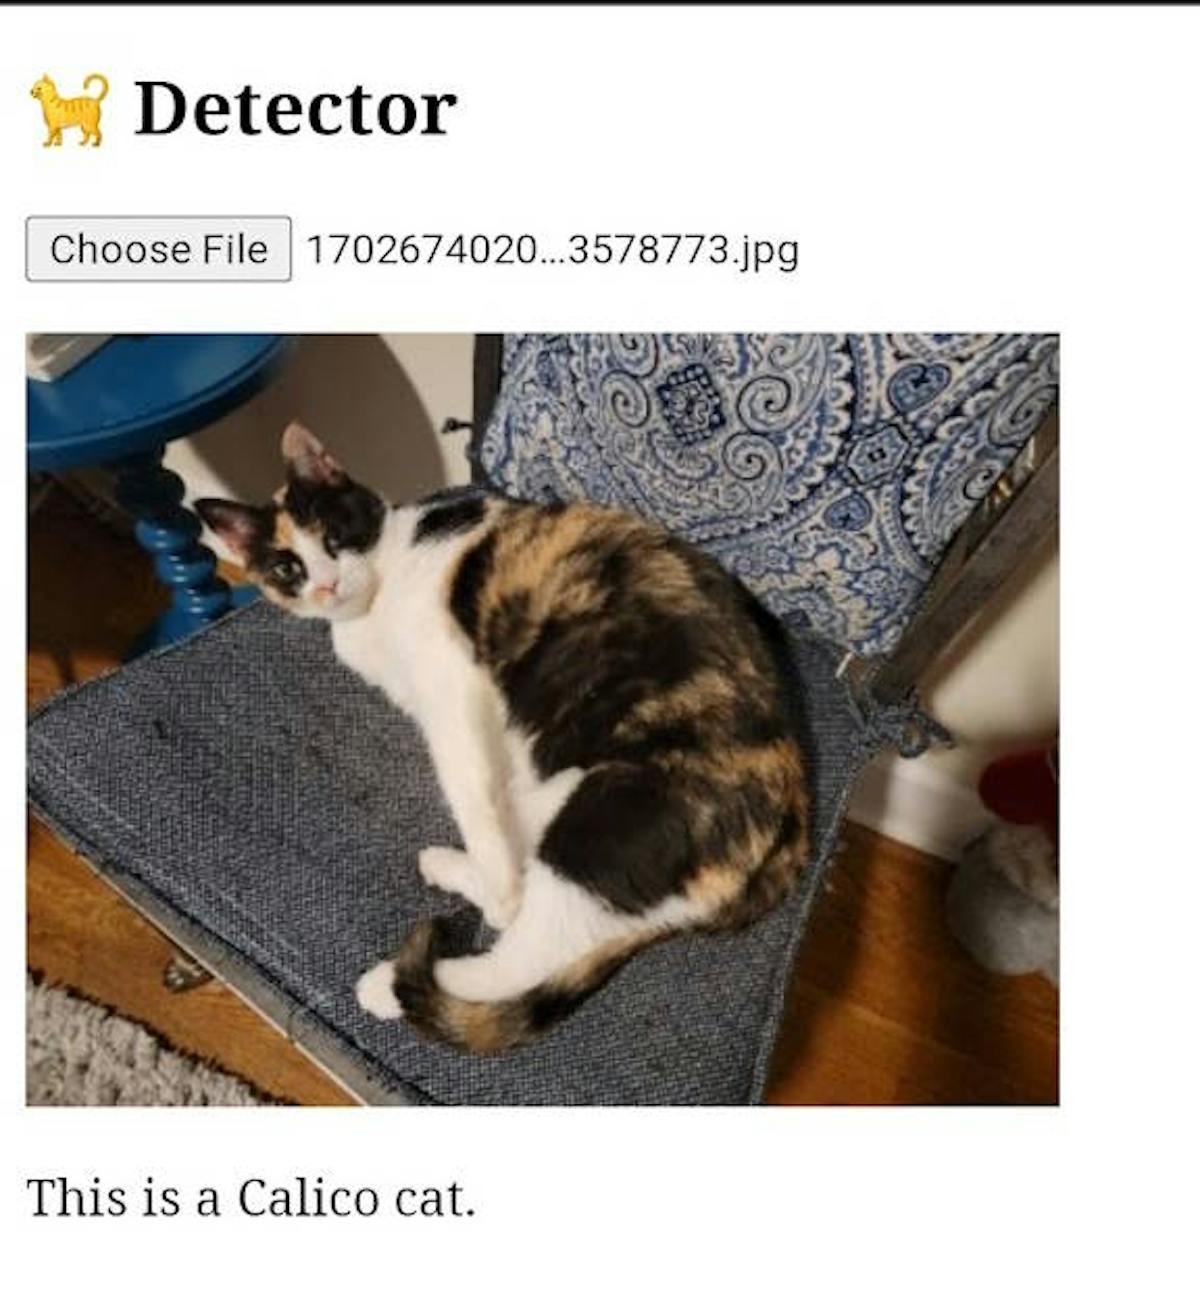 Una imagen de un gato calicó correctamente reconocido